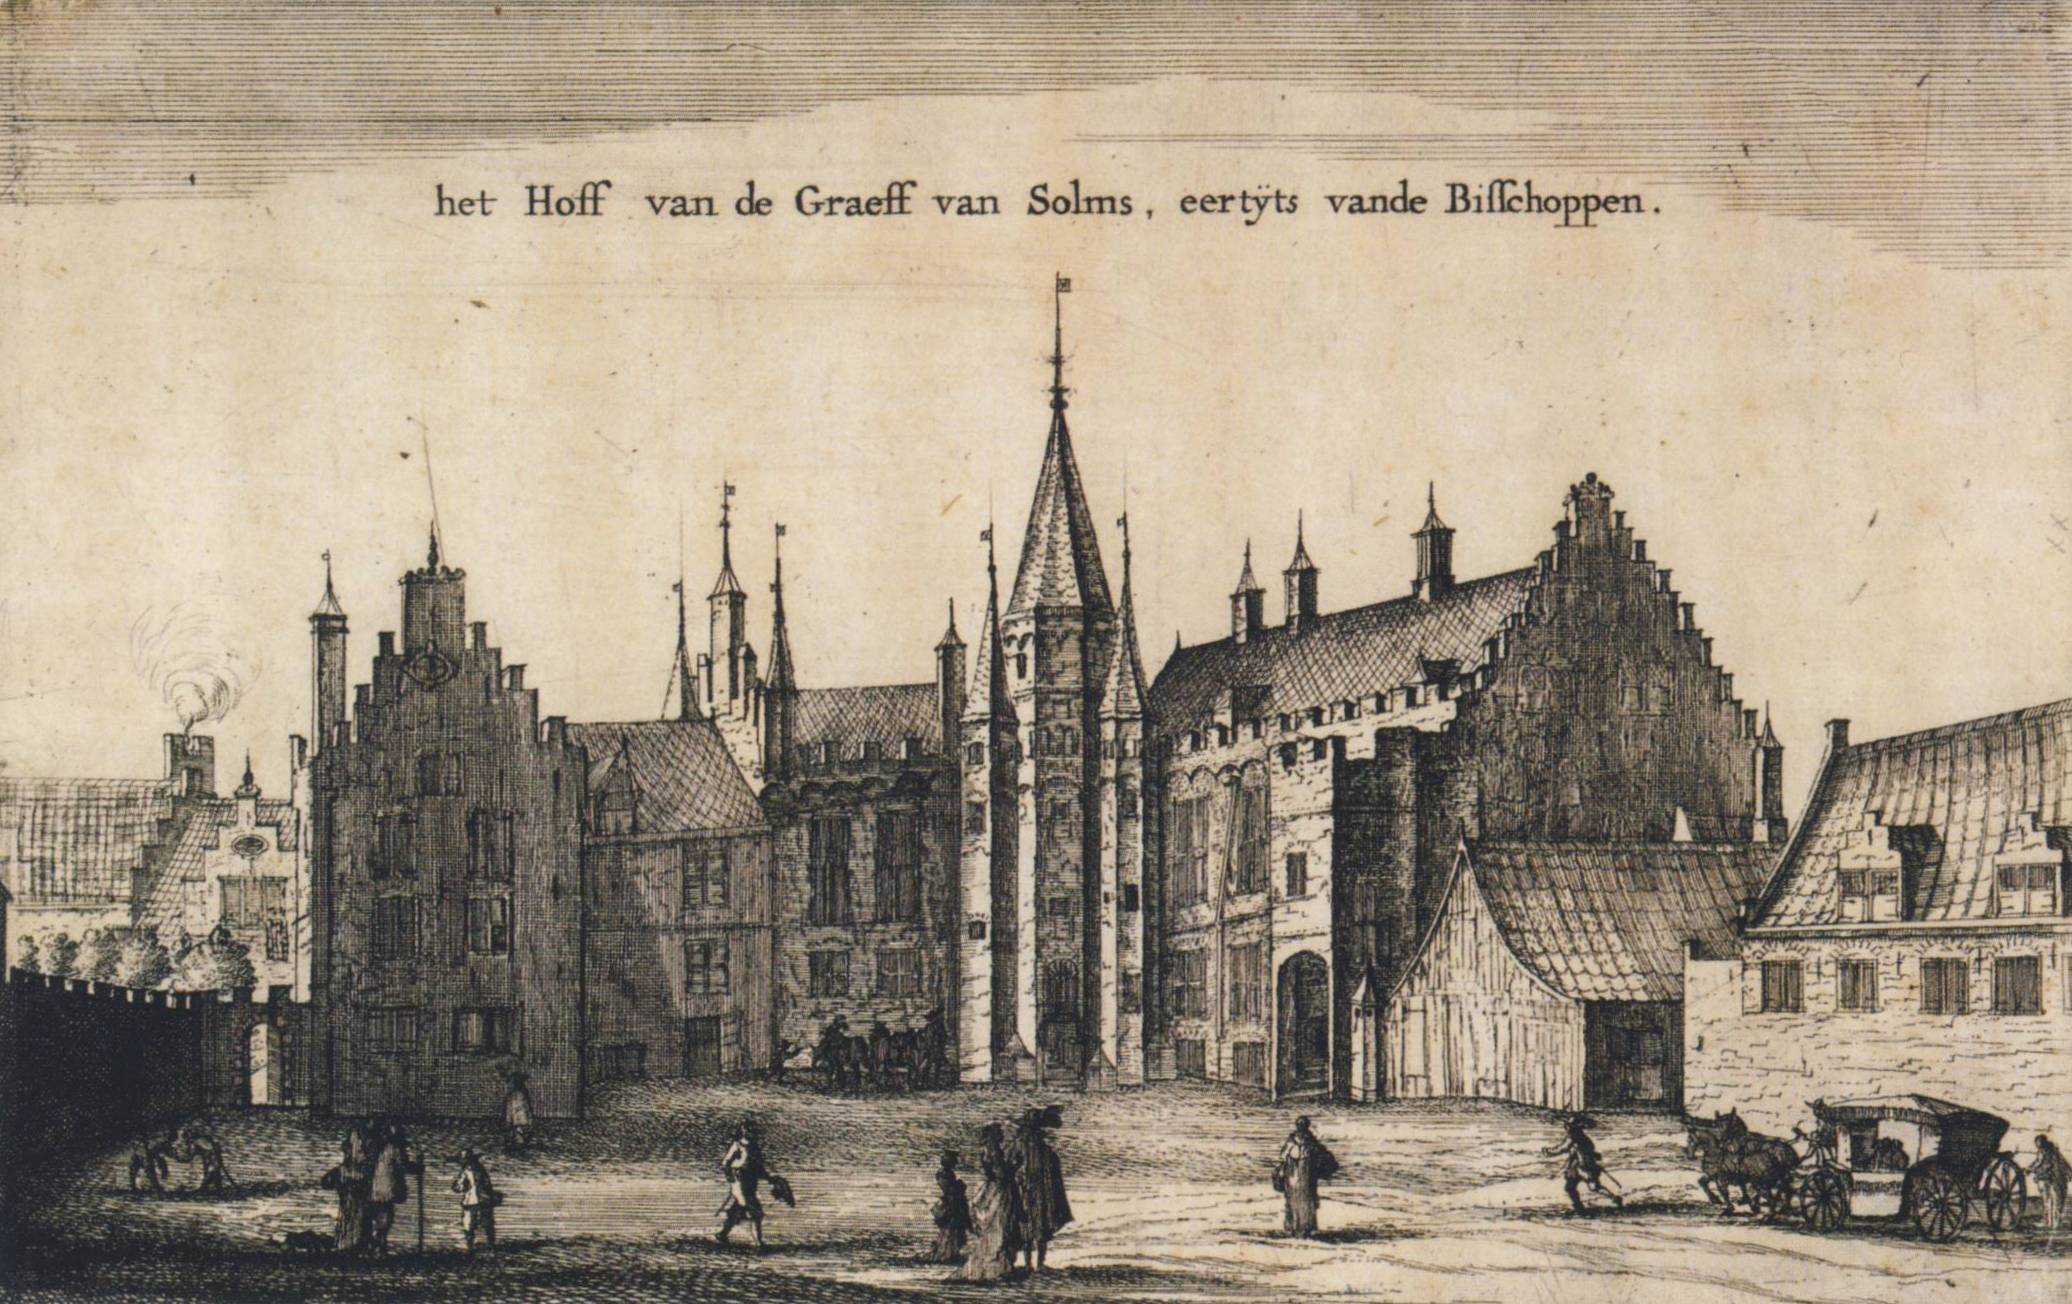 Het Bisschopshof van Roelof Roghman circa 1650